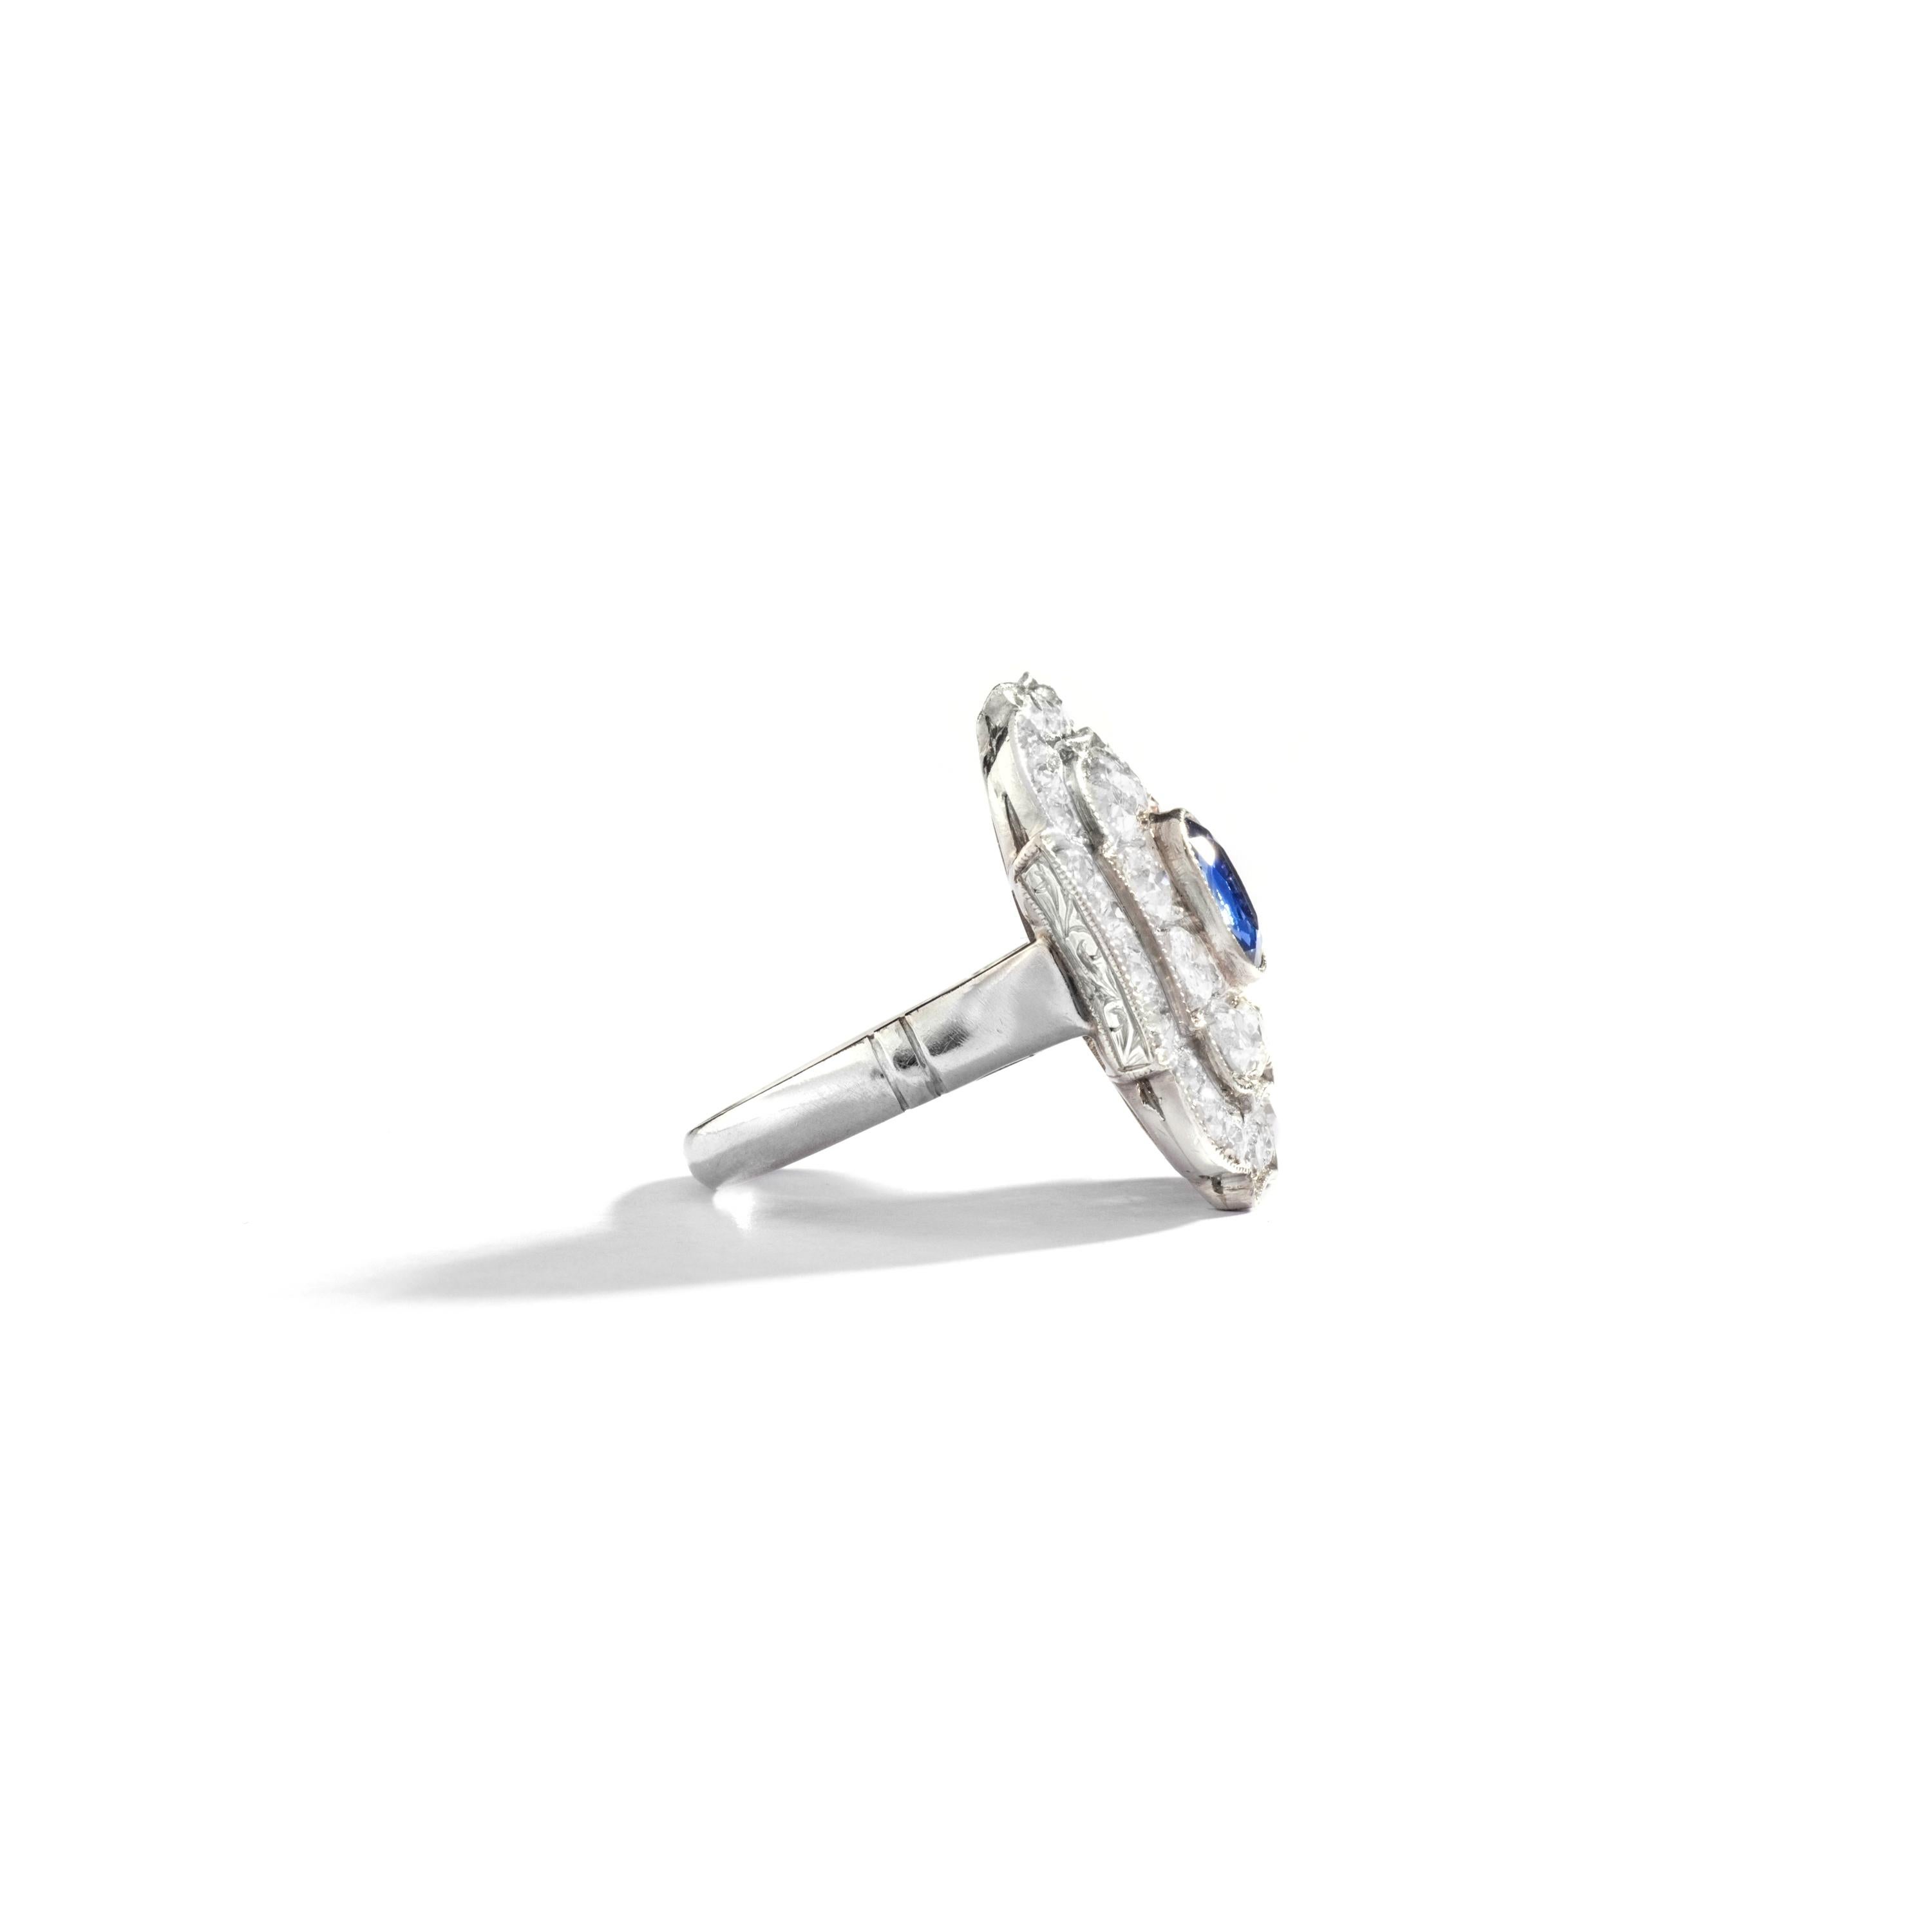 Dieser raffinierte Ring aus Platin und Diamanten ist sowohl bedeutungsvoll als auch leicht zu tragen. Im Mittelpunkt steht ein natürlicher Ceylan-Saphir in Kissenform.

Ringgröße: 5 1/2 US.
